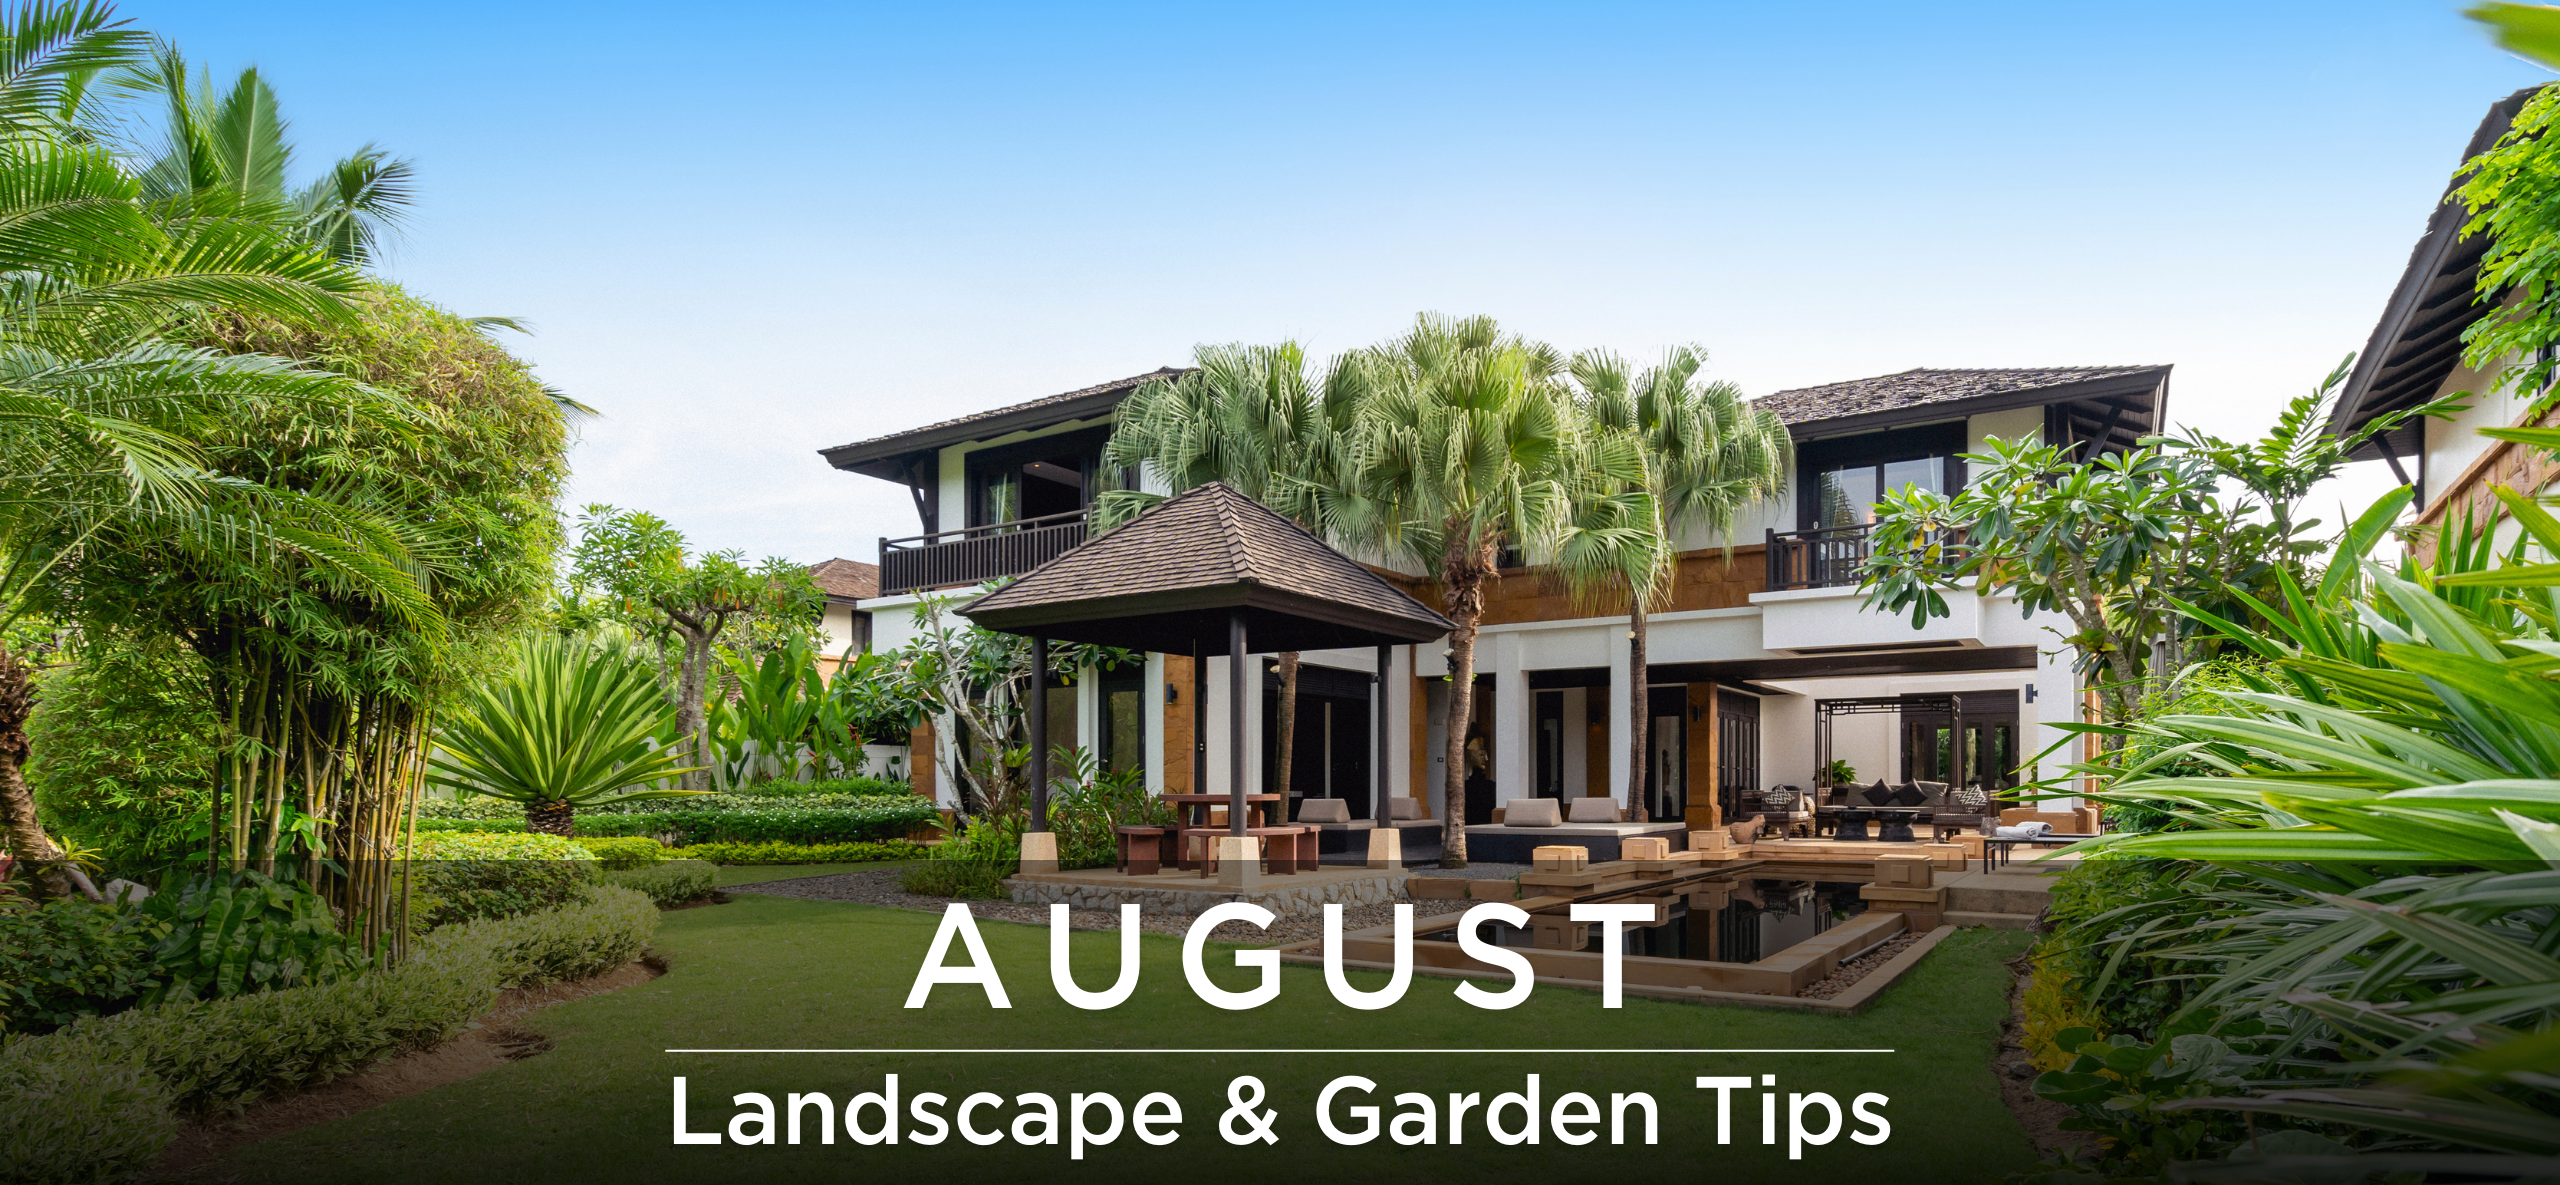 August Landscape & garden tips header